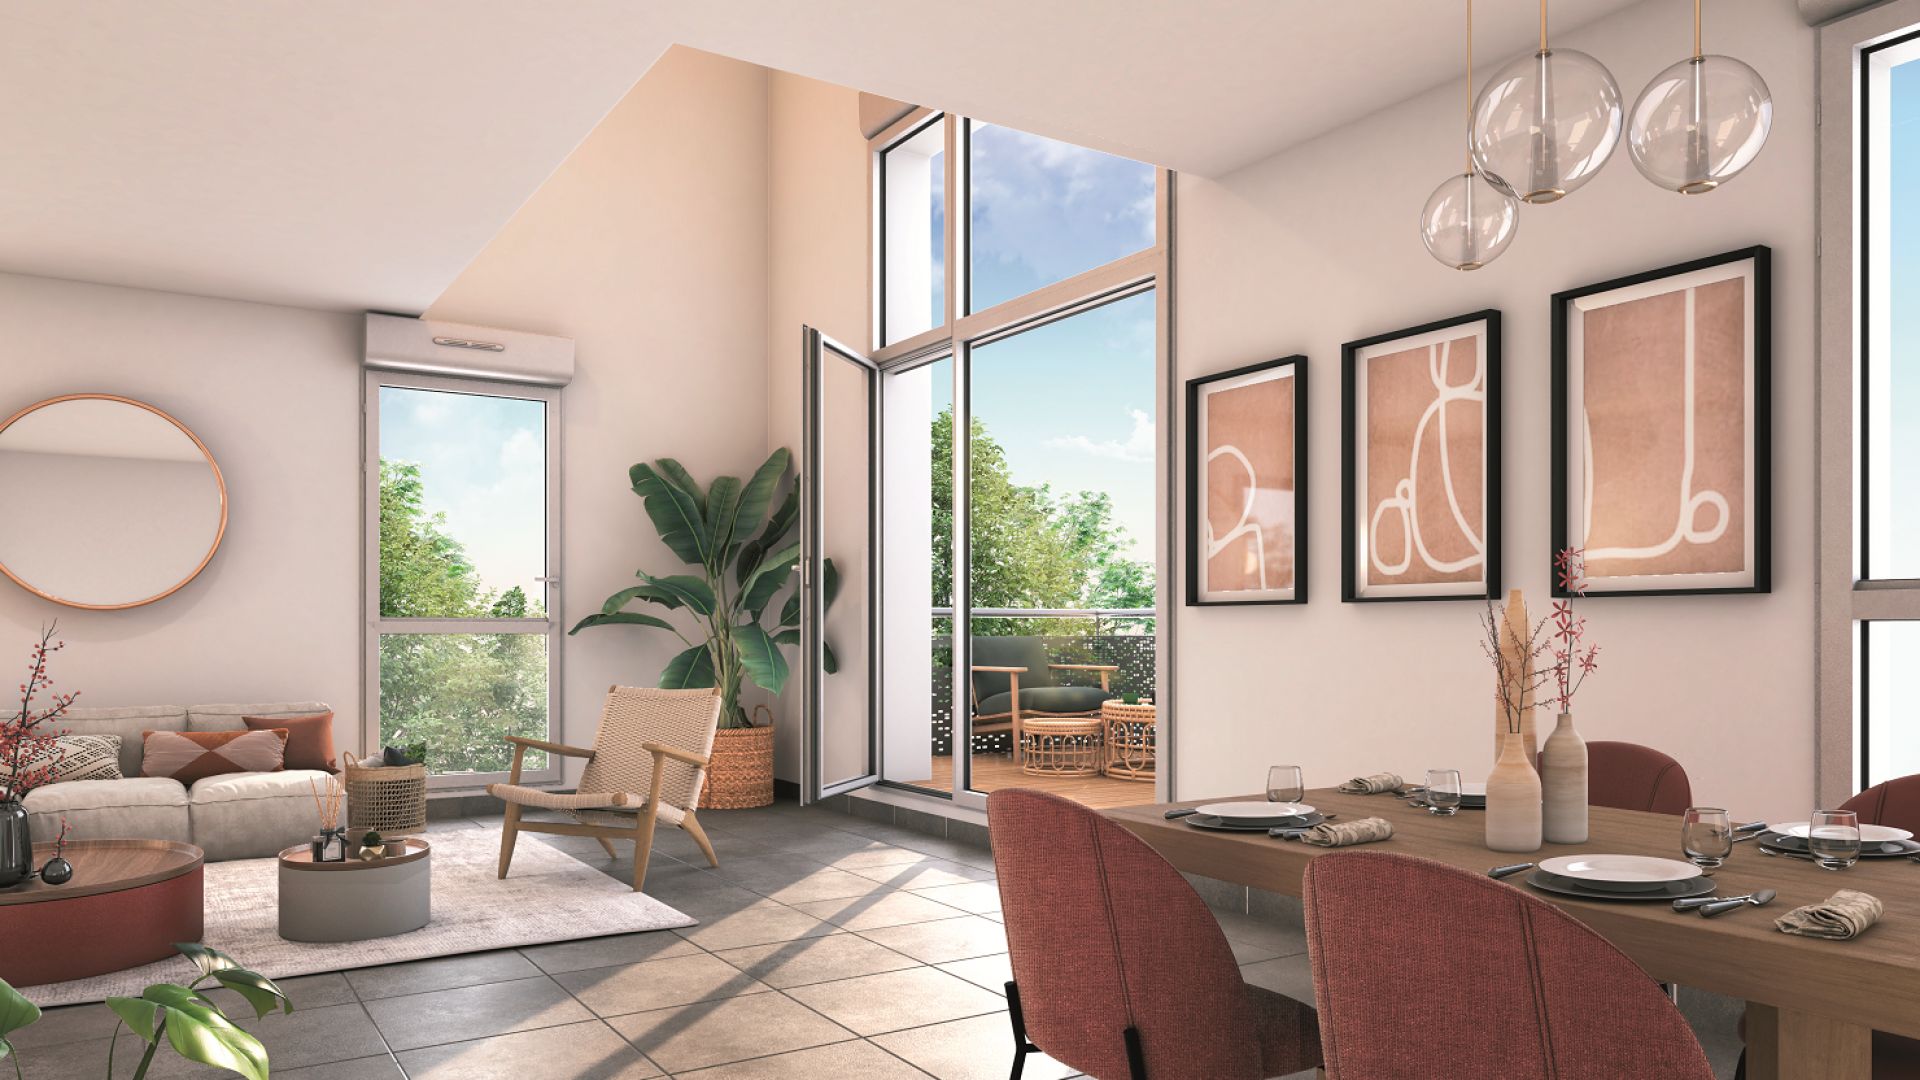 Greencity immobilier - achat appartements neufs du T2 au T4 - Résidence Le Hameau des Palombes - 31240 L'Union  - vue intérieure